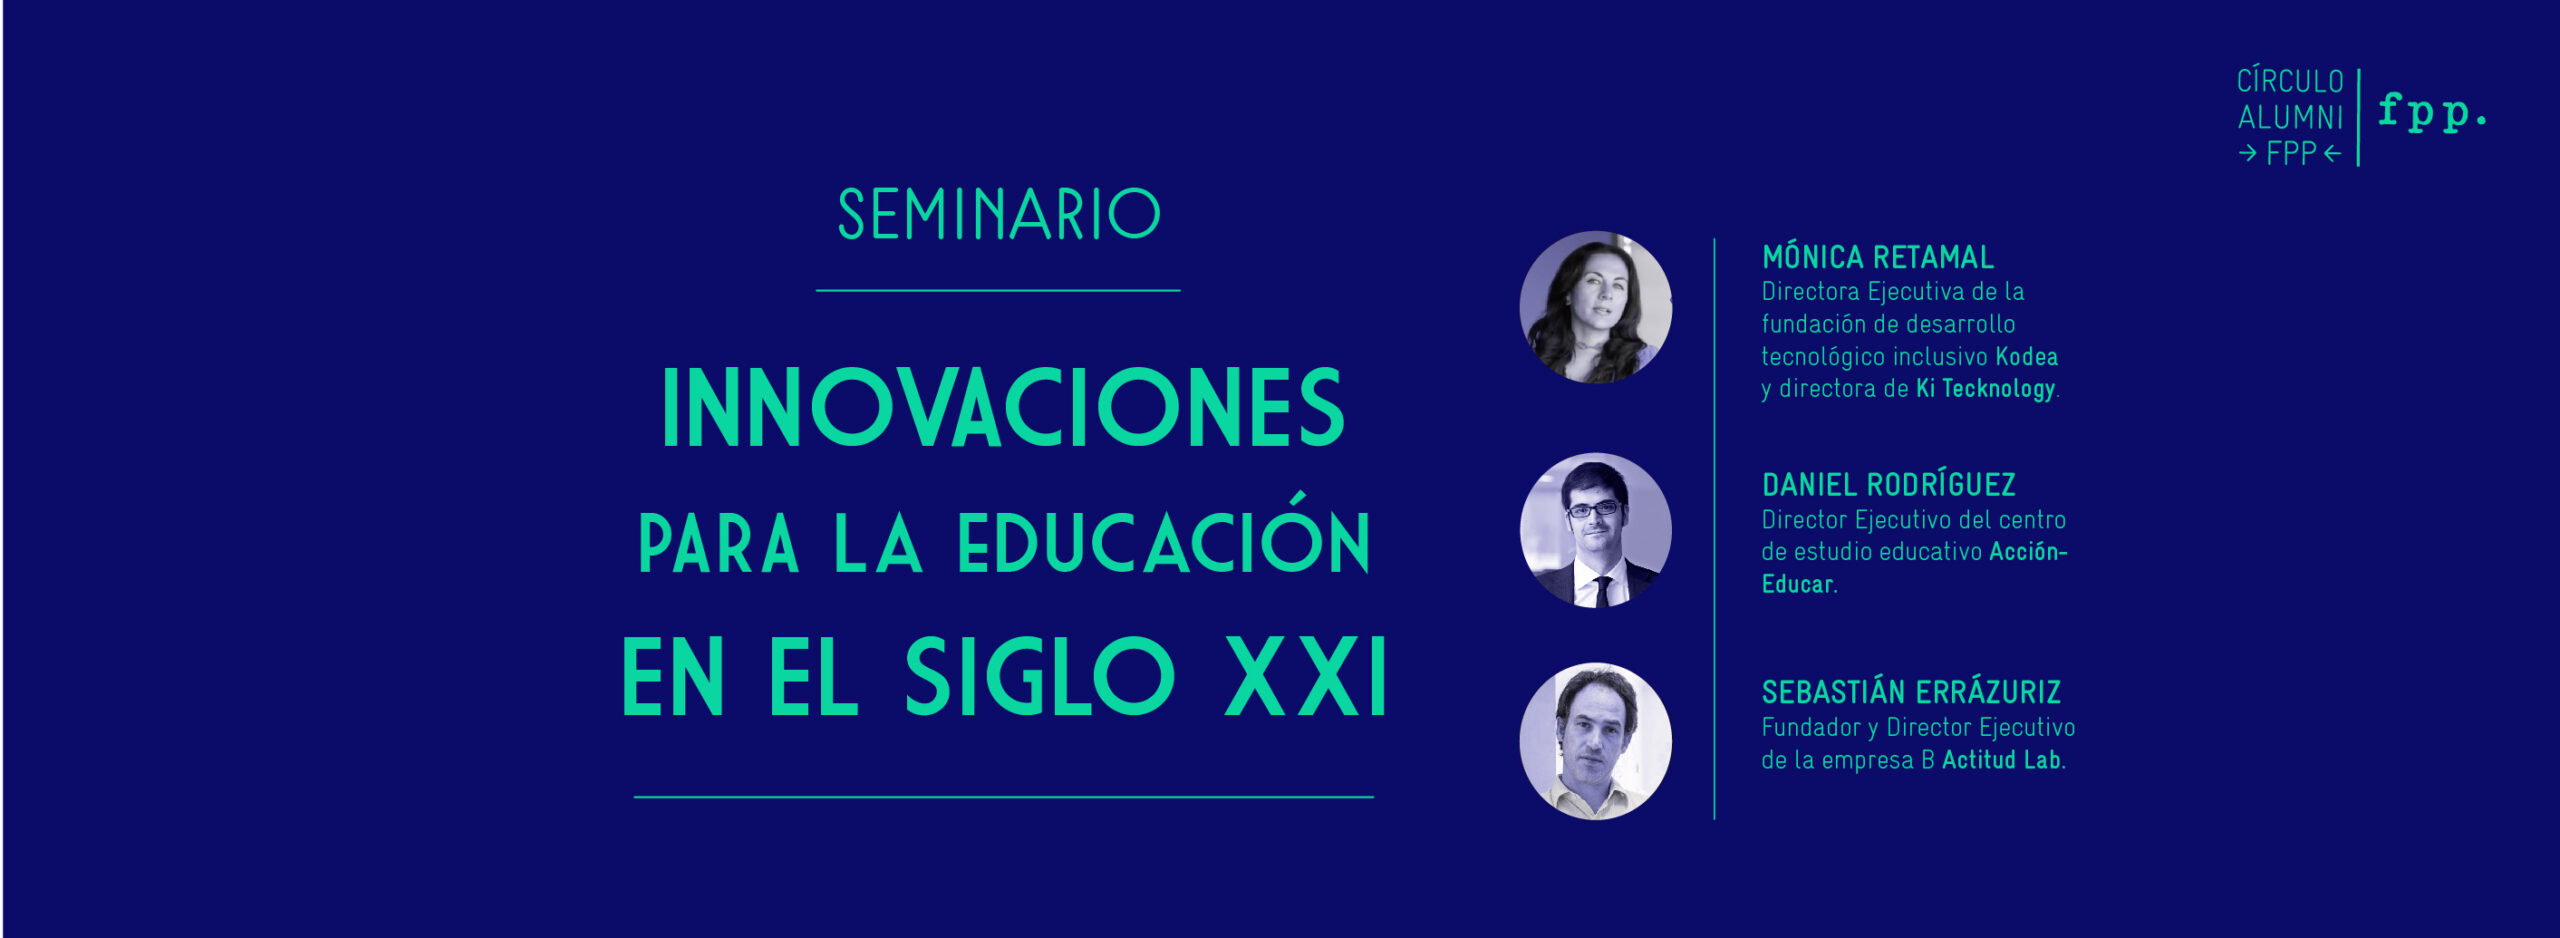 Seminario: Innovaciones para la educación en el siglo XXI